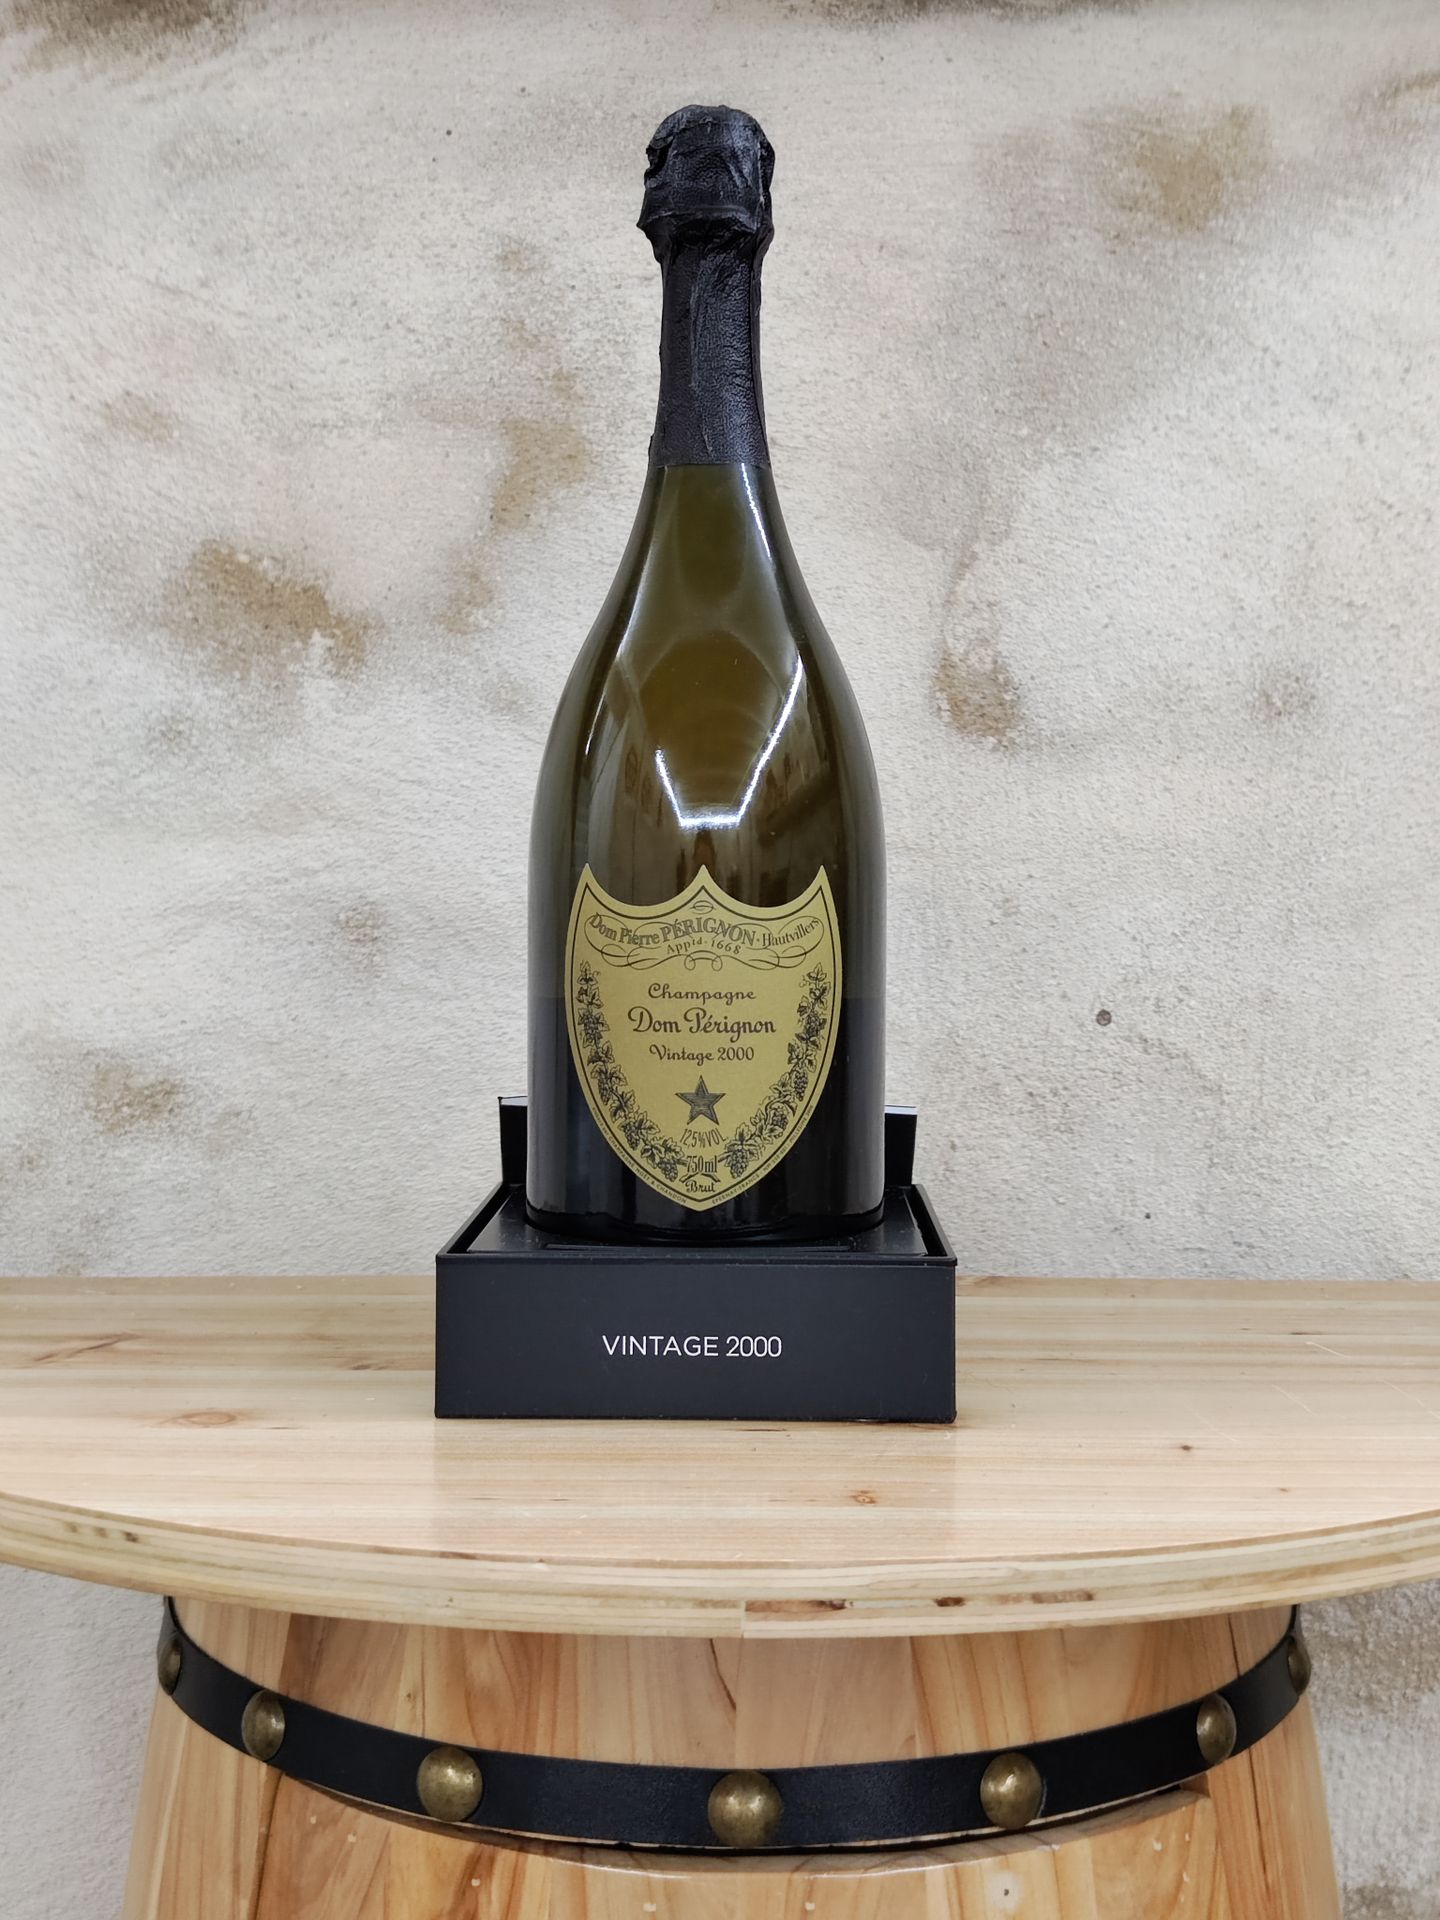 Null 1 瓶 DOM PERIGNON 2000年份香槟。
包装盒内。